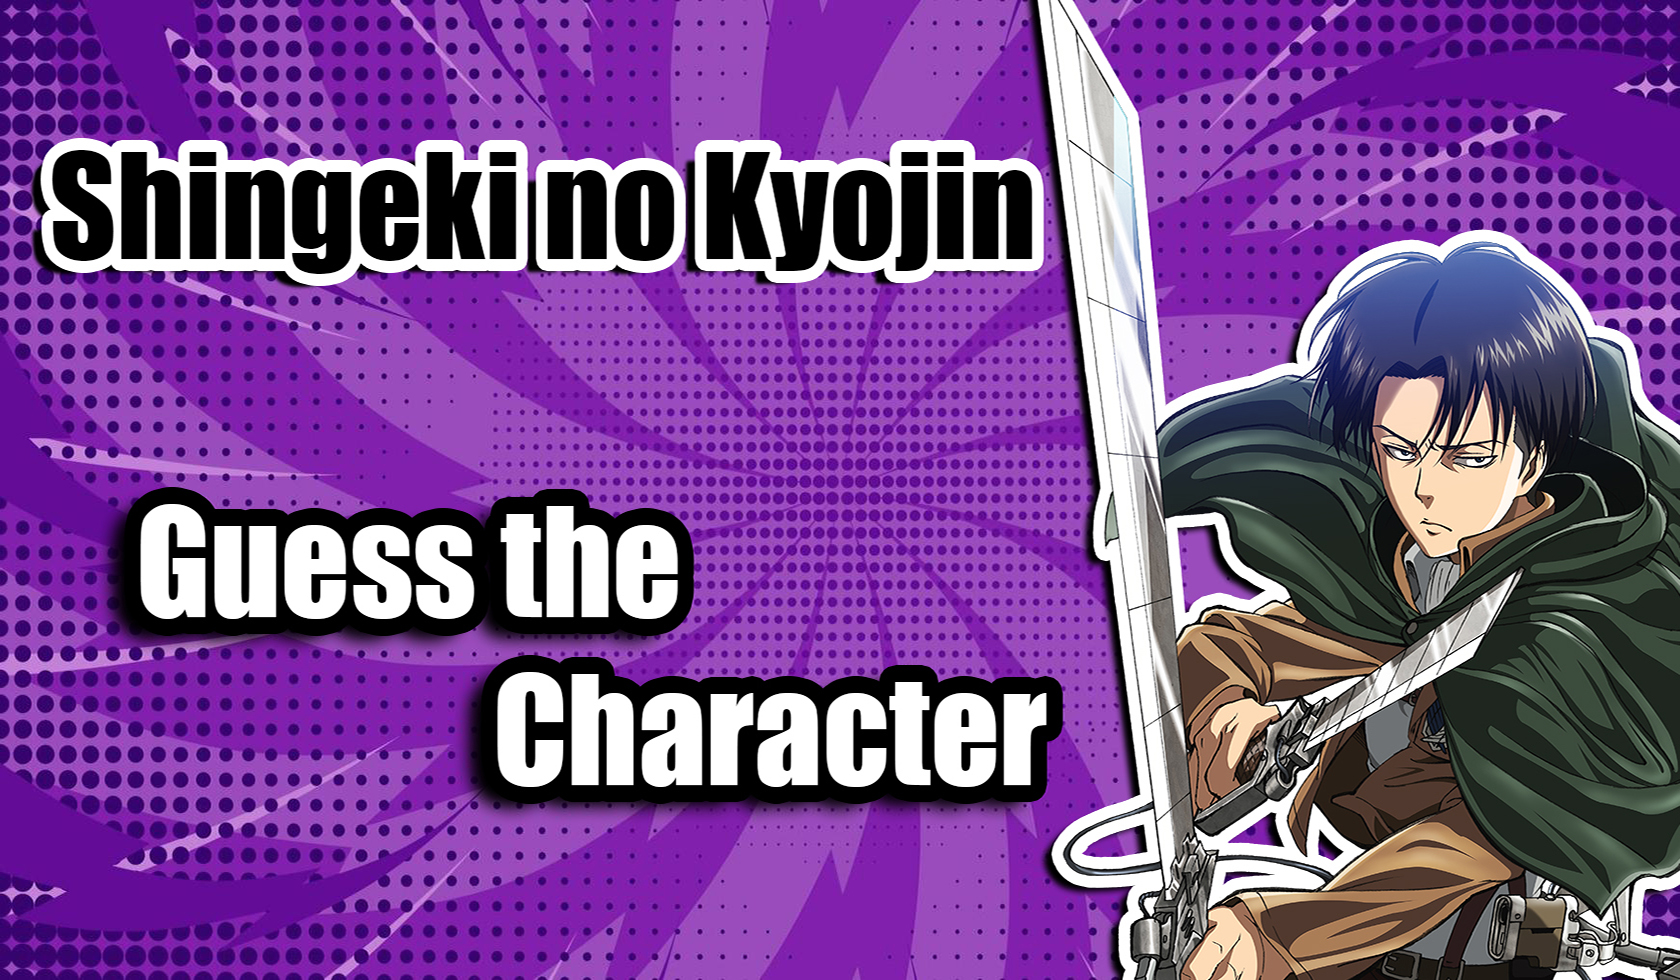 Shingeki no Kyojin: Guess the Character